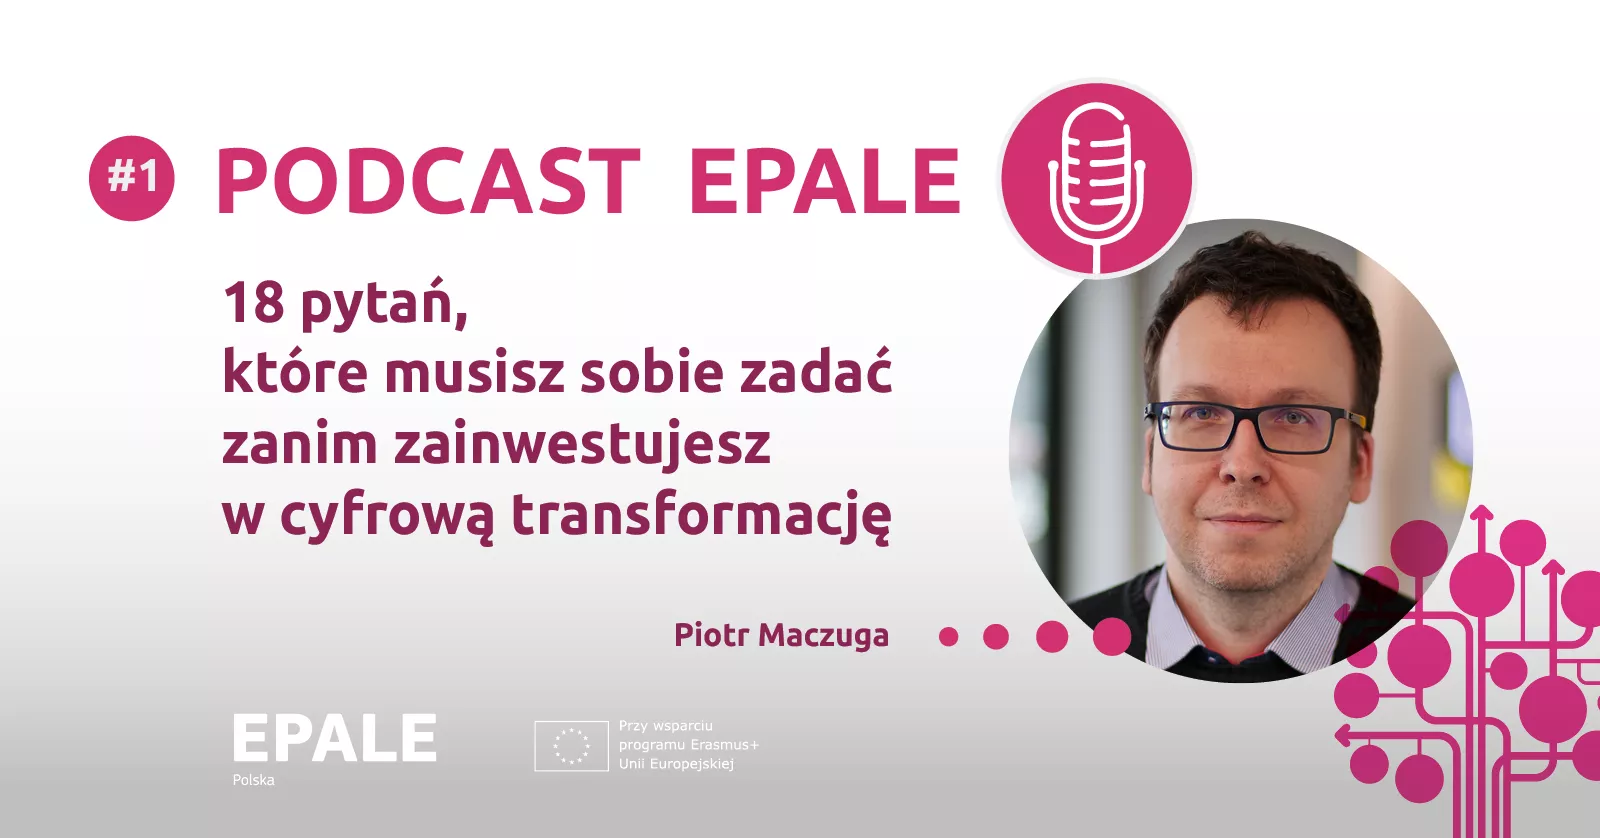 baner promujący podcast EPALE.